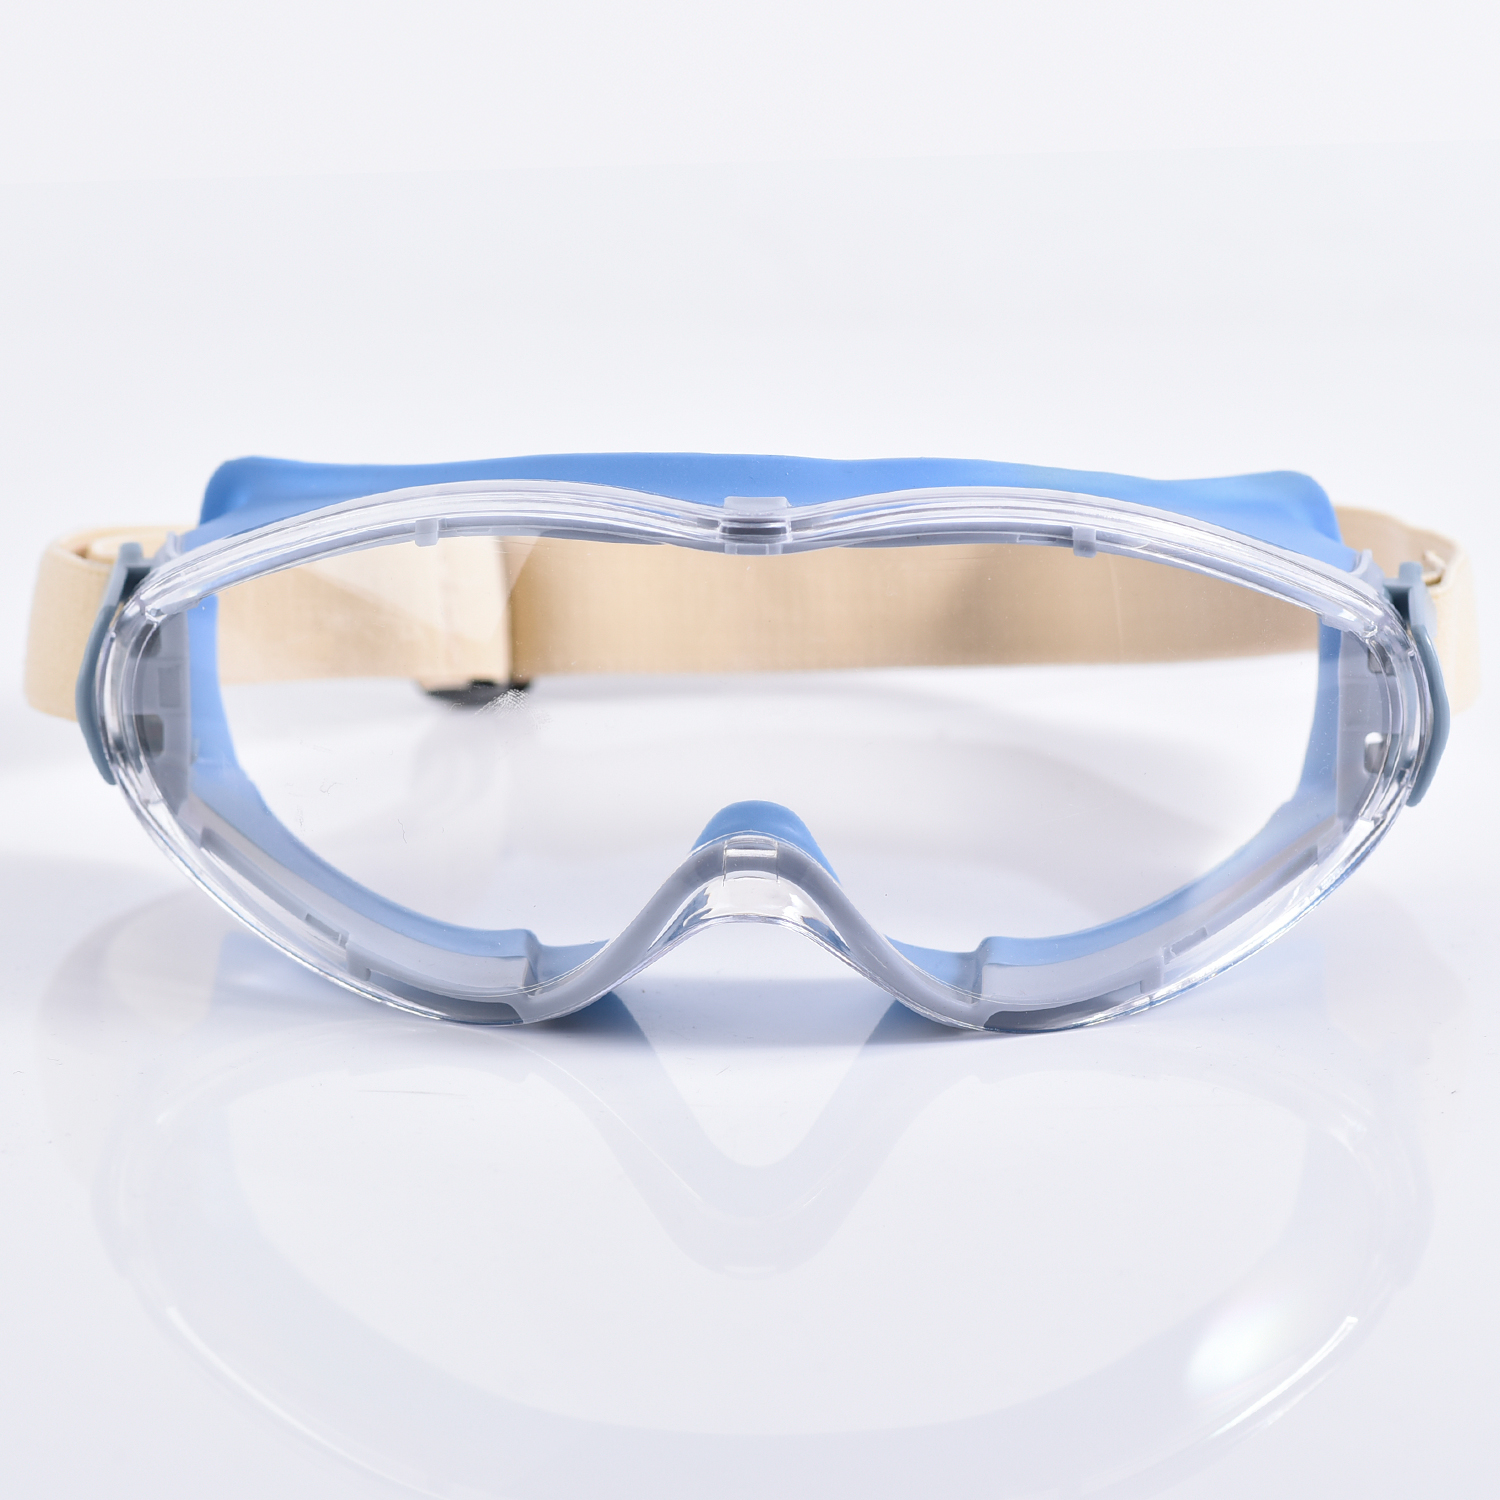 Zugelassene Schutzbrille KS504 Blau